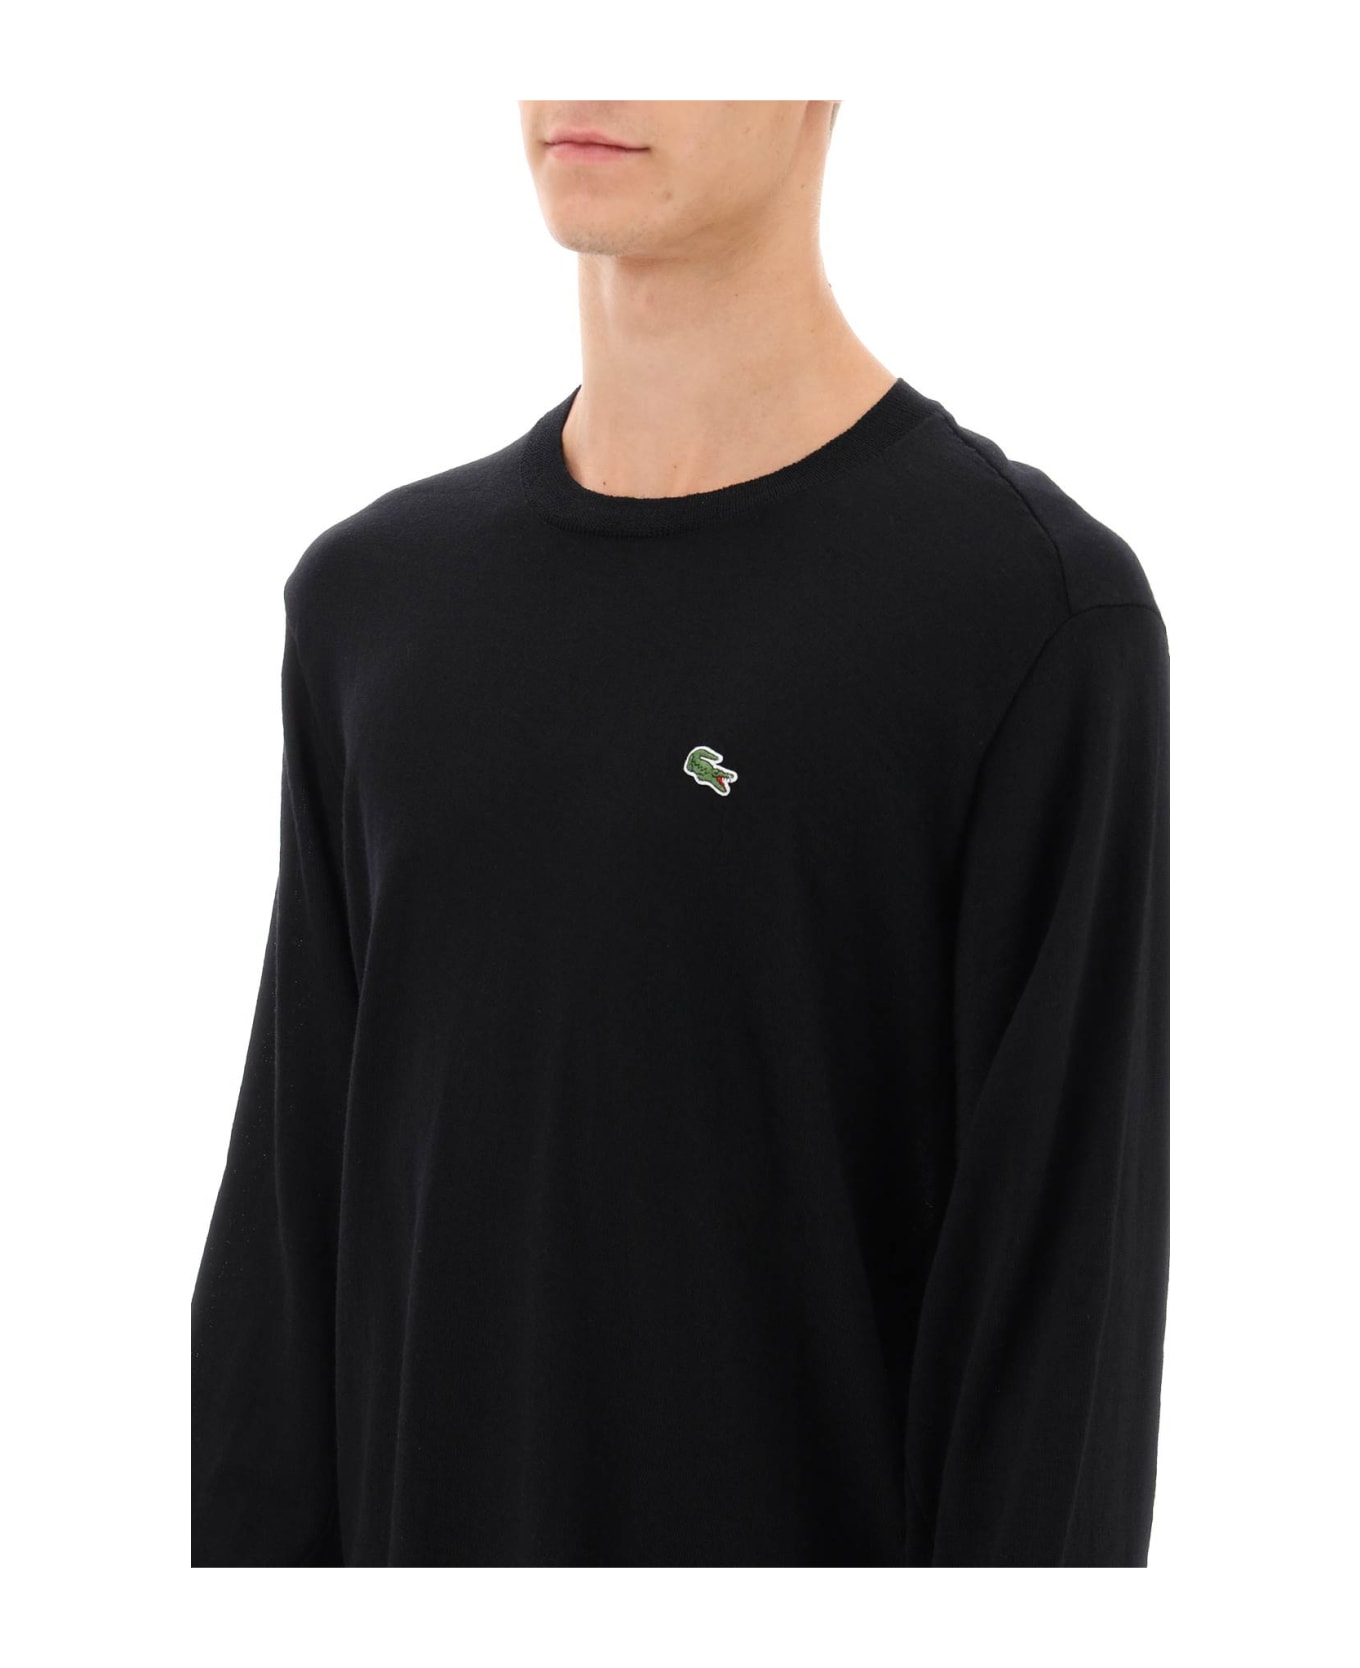 Comme des Garçons Shirt X Lacoste Bias-cut Sweater - BLACK (Black)